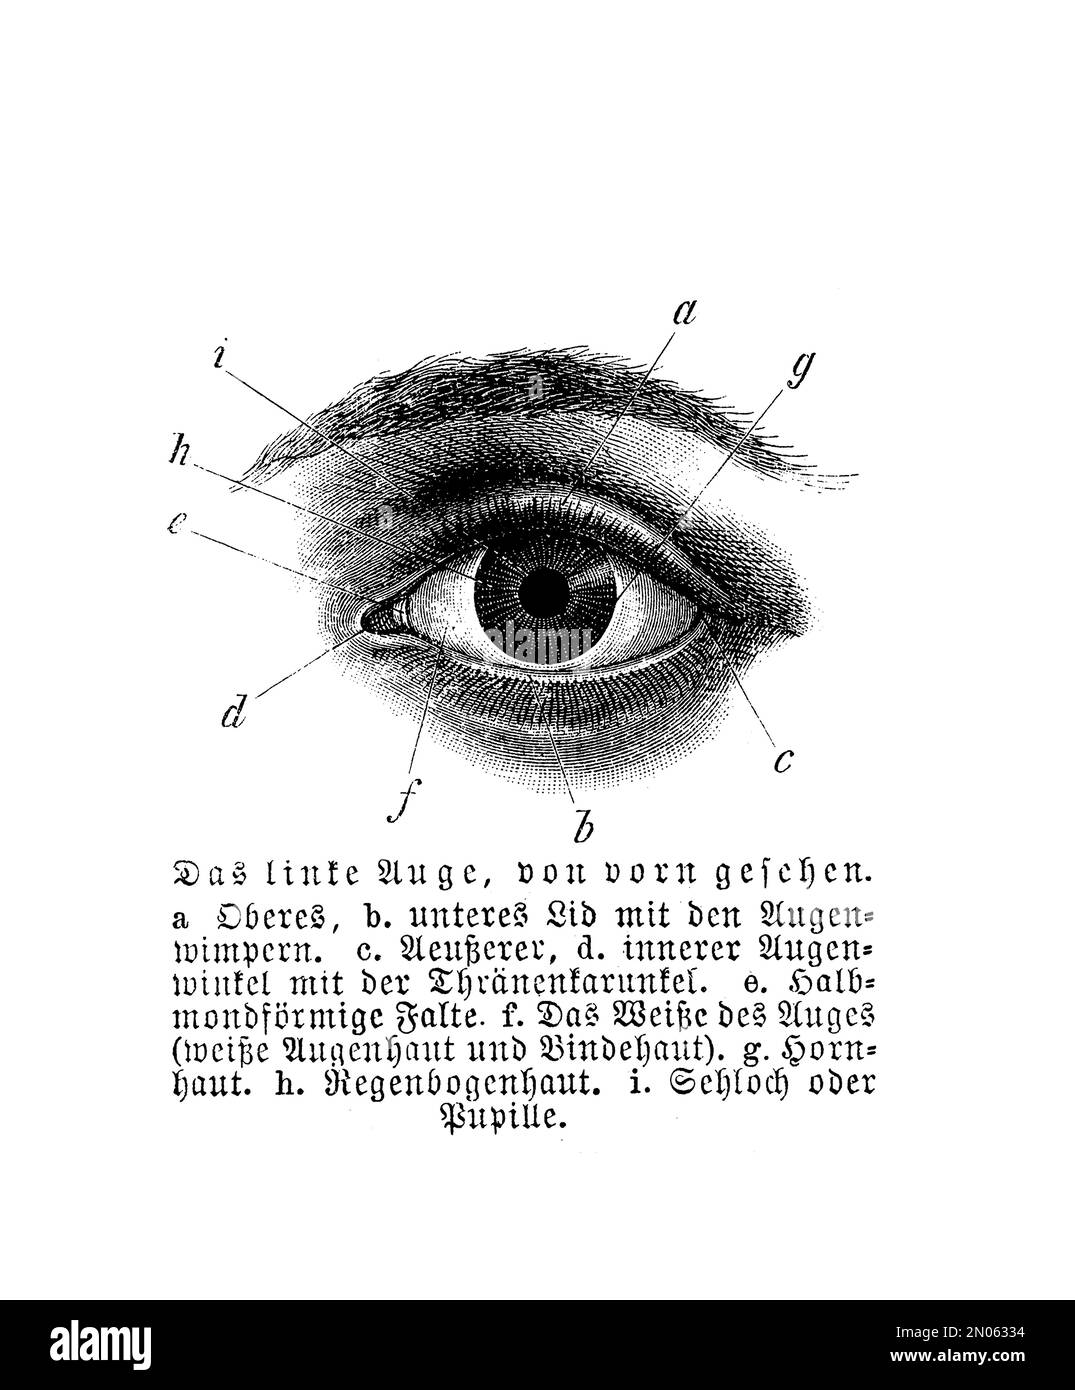 Anatomia - occhio umano, incisione vintage con descrizioni tedesche Foto Stock